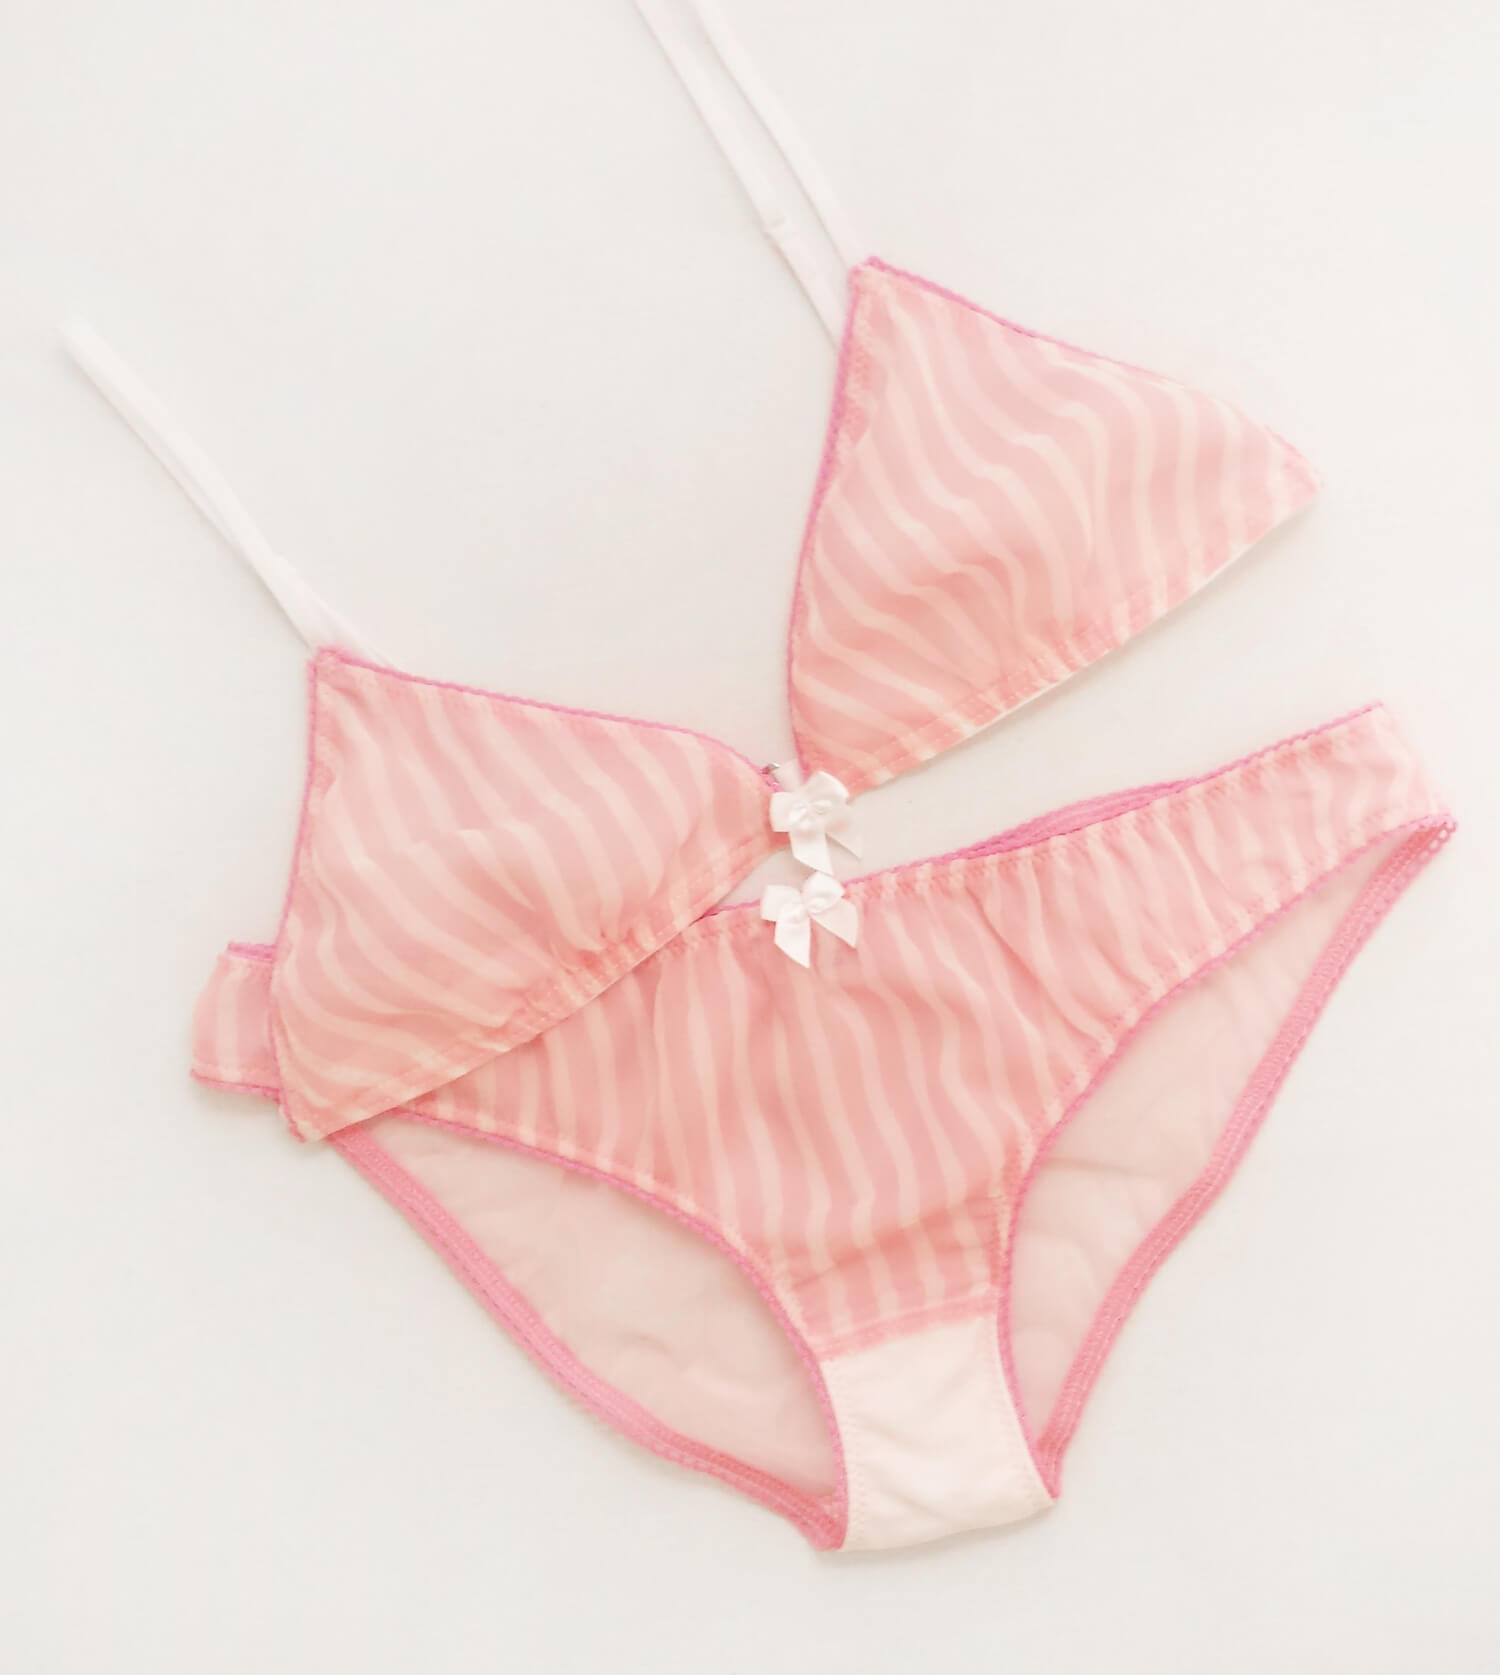 Lily light pink lingerie set